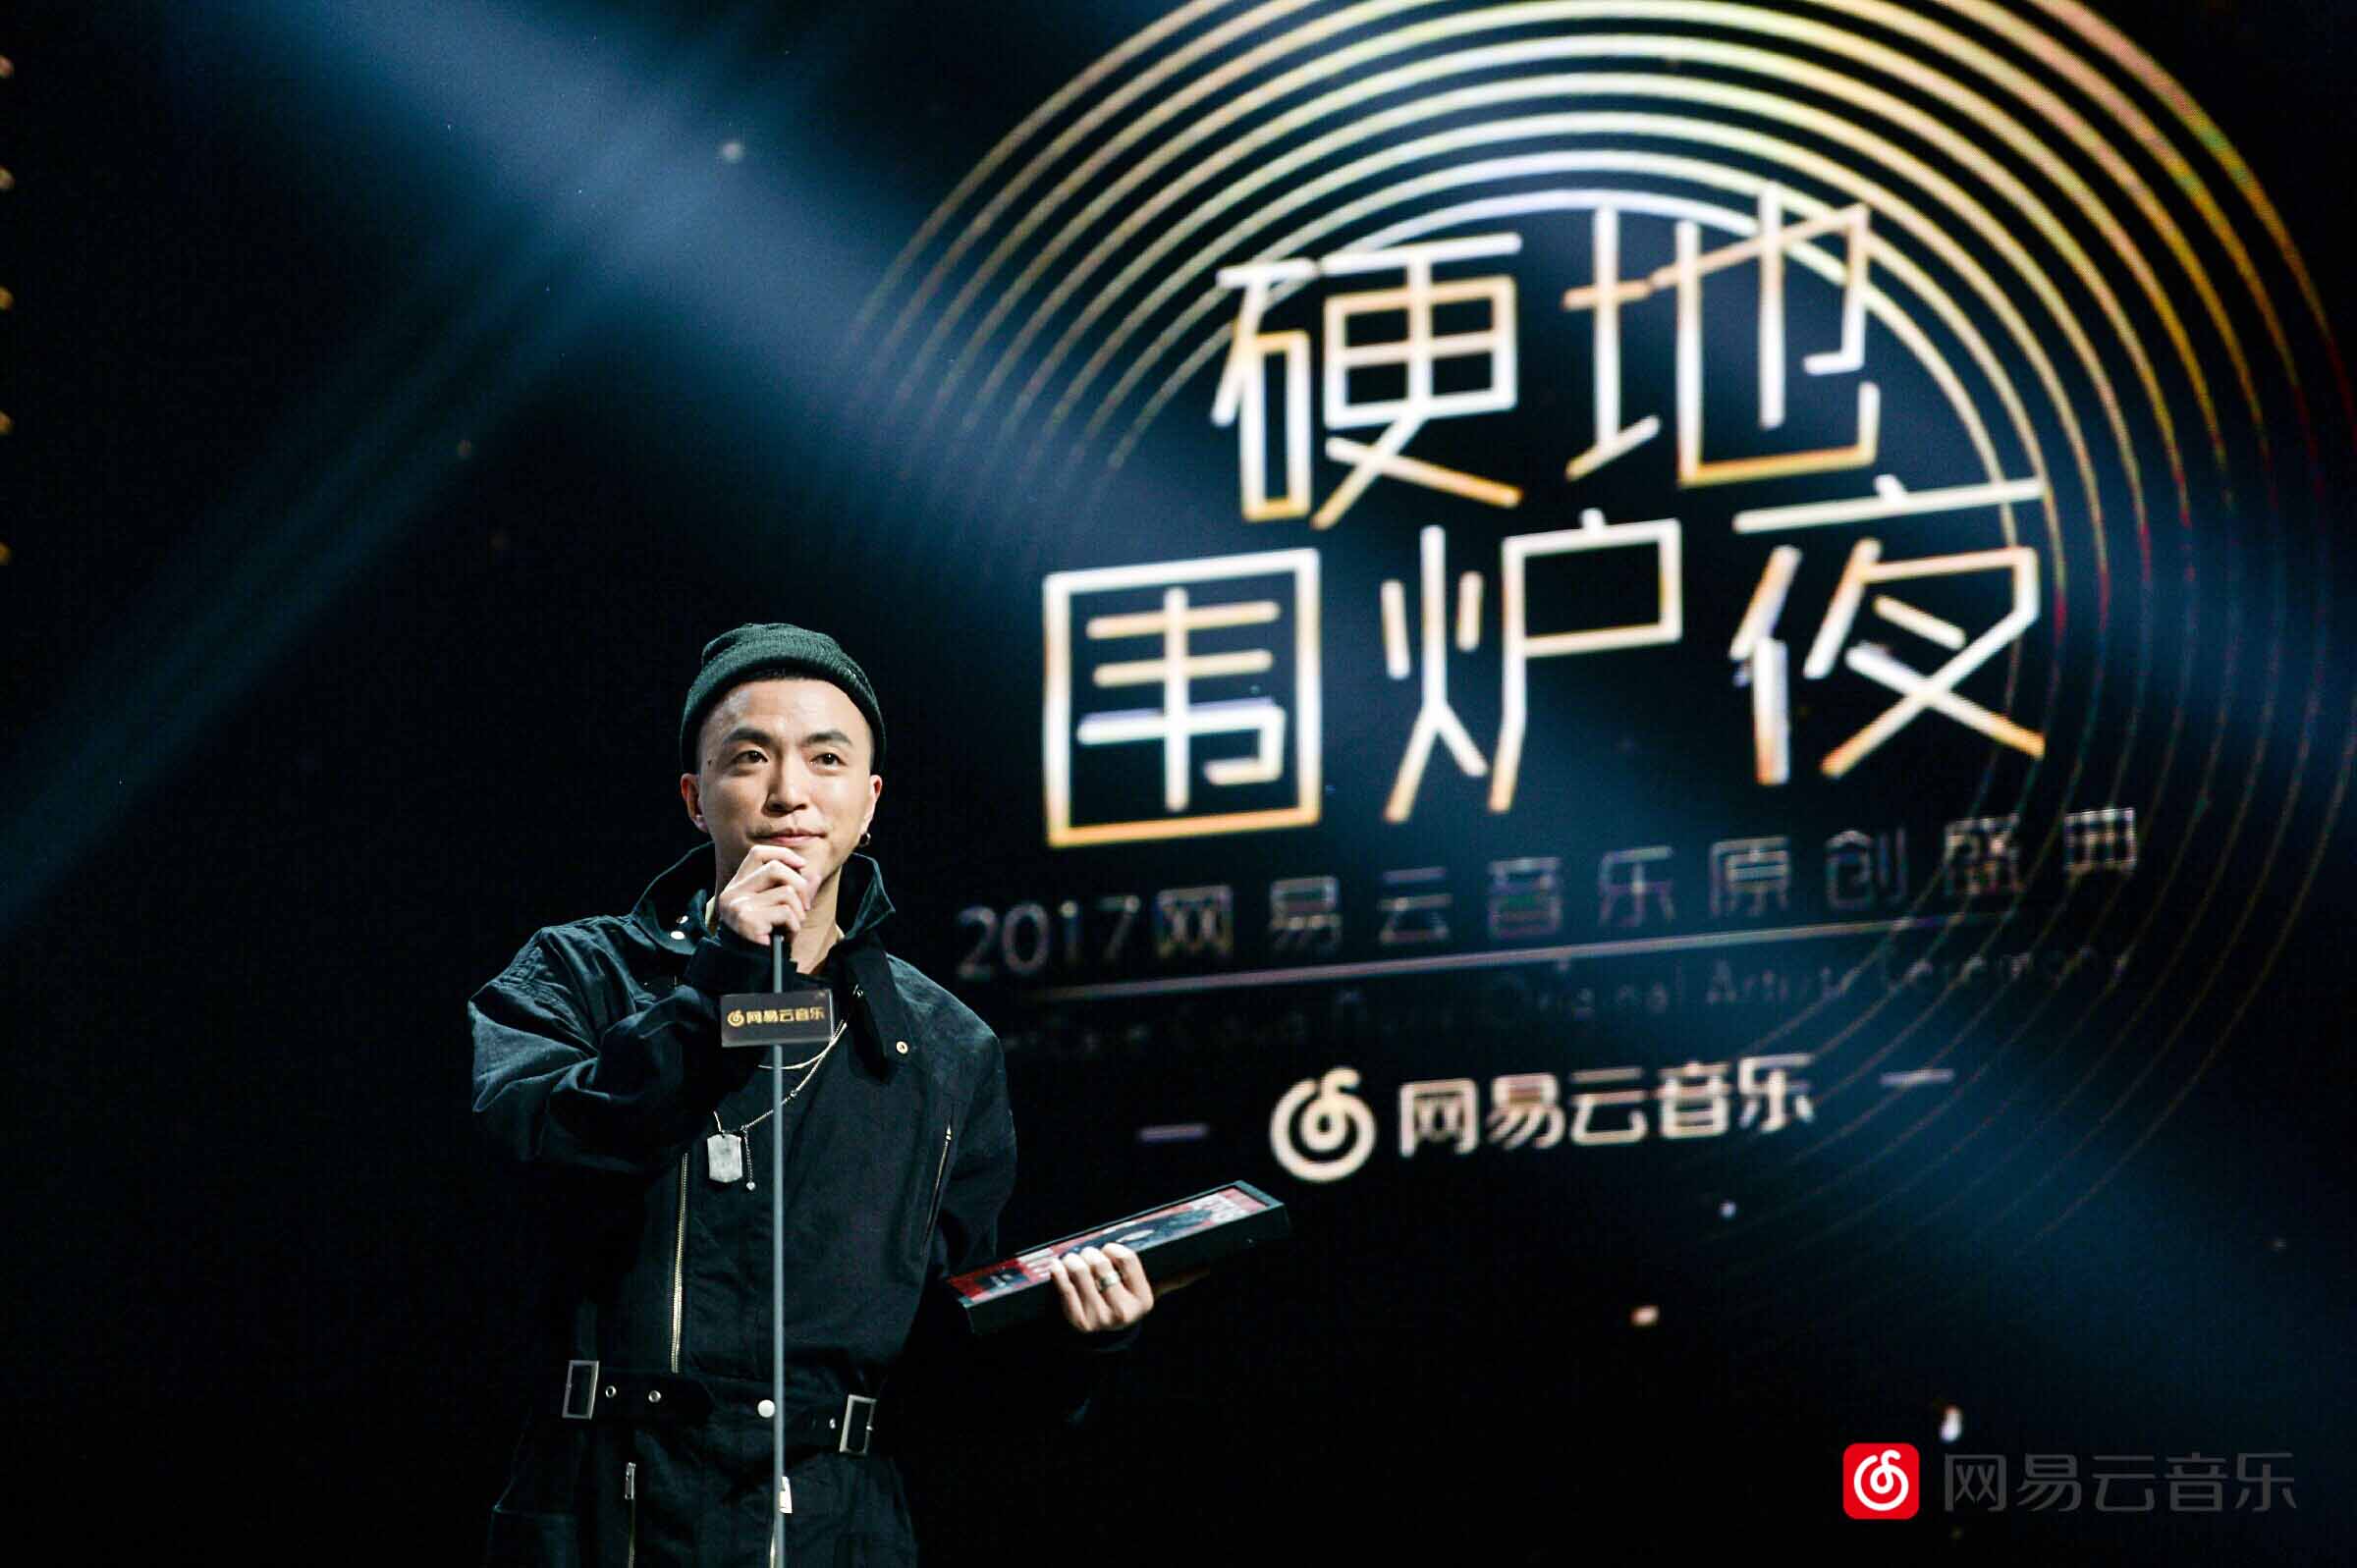 硬地围炉夜·2017网易云音乐原创盛典在北京